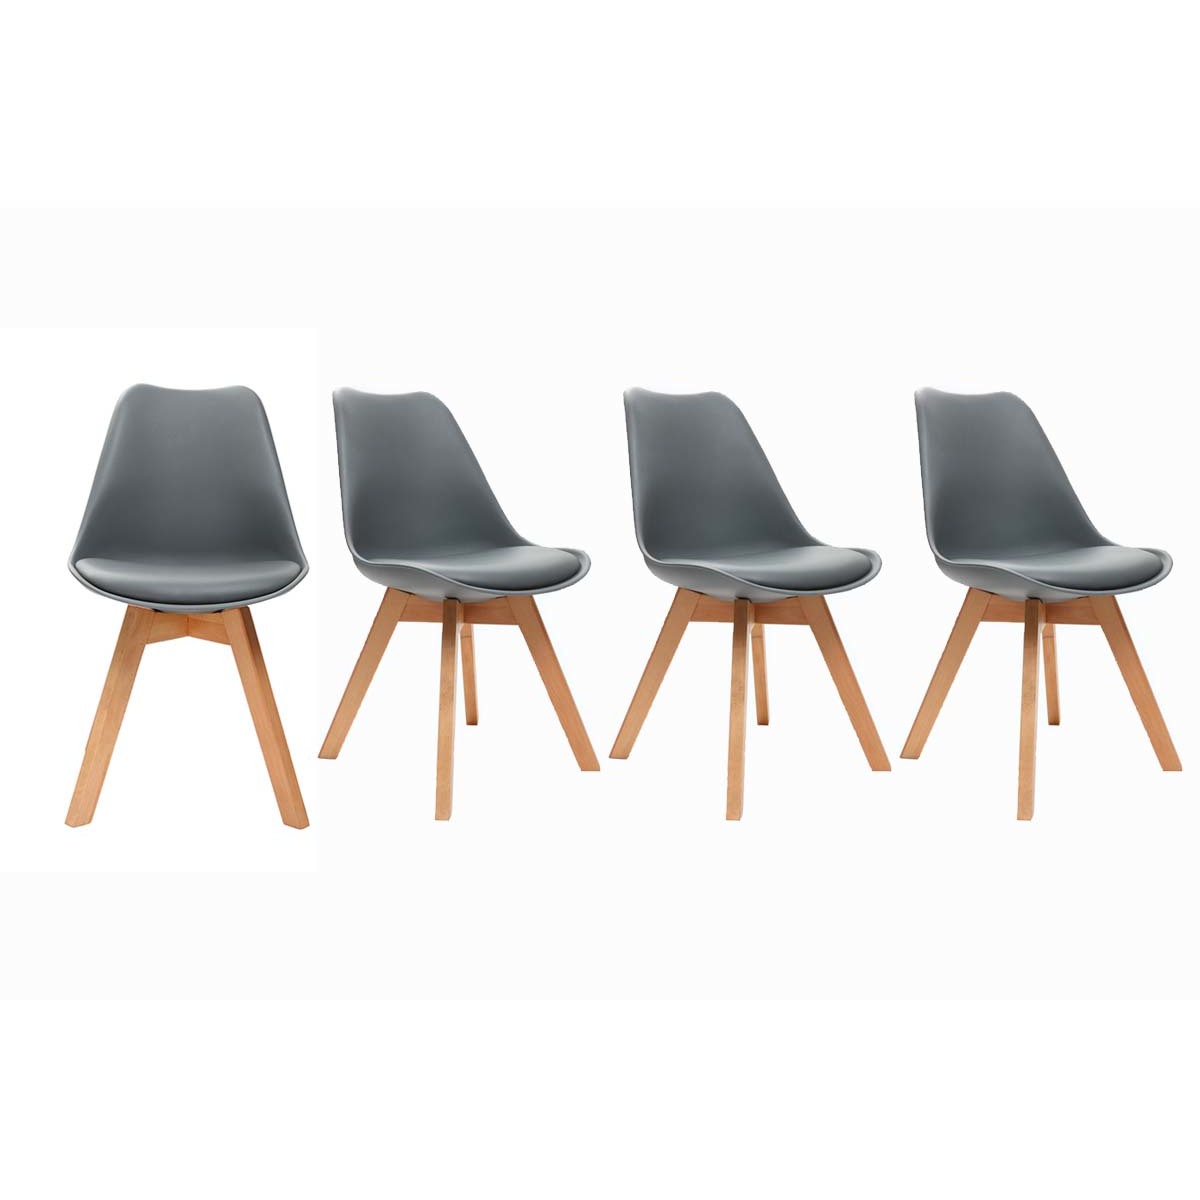 Gruppo di 4 sedie design piede legno seduta grigia PAULINE